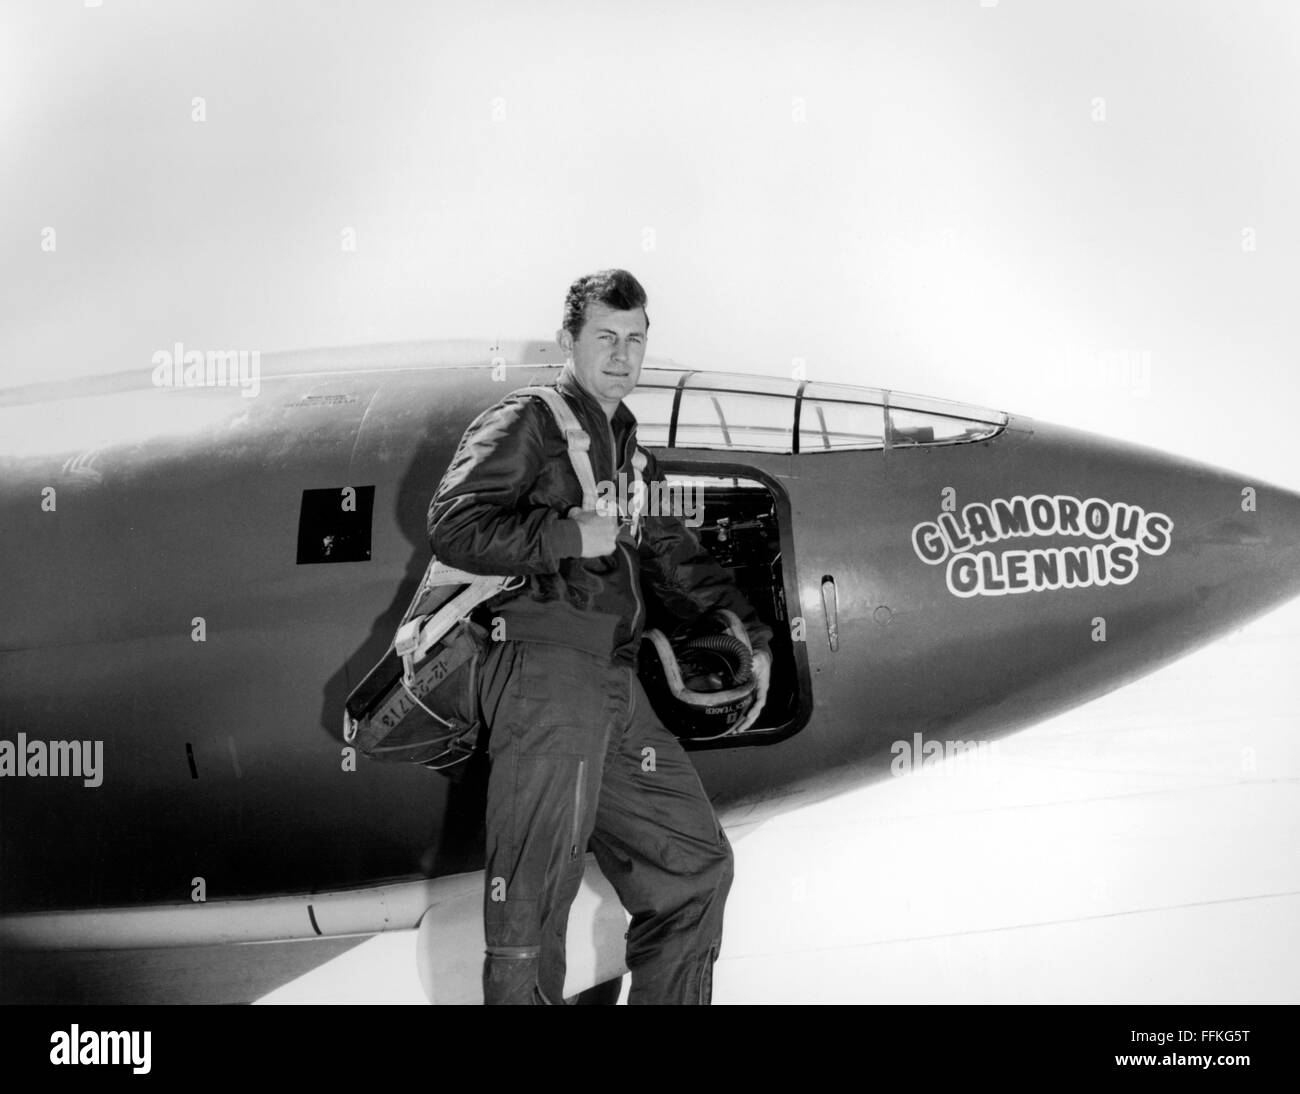 Chuck Yeager. US Air Force Test pilot Chuck Yeager, der vor die Bell x-1 "Glamouröse Werner", in dem er die Schallmauer brach. Foto c.1947 USAF Stockfoto